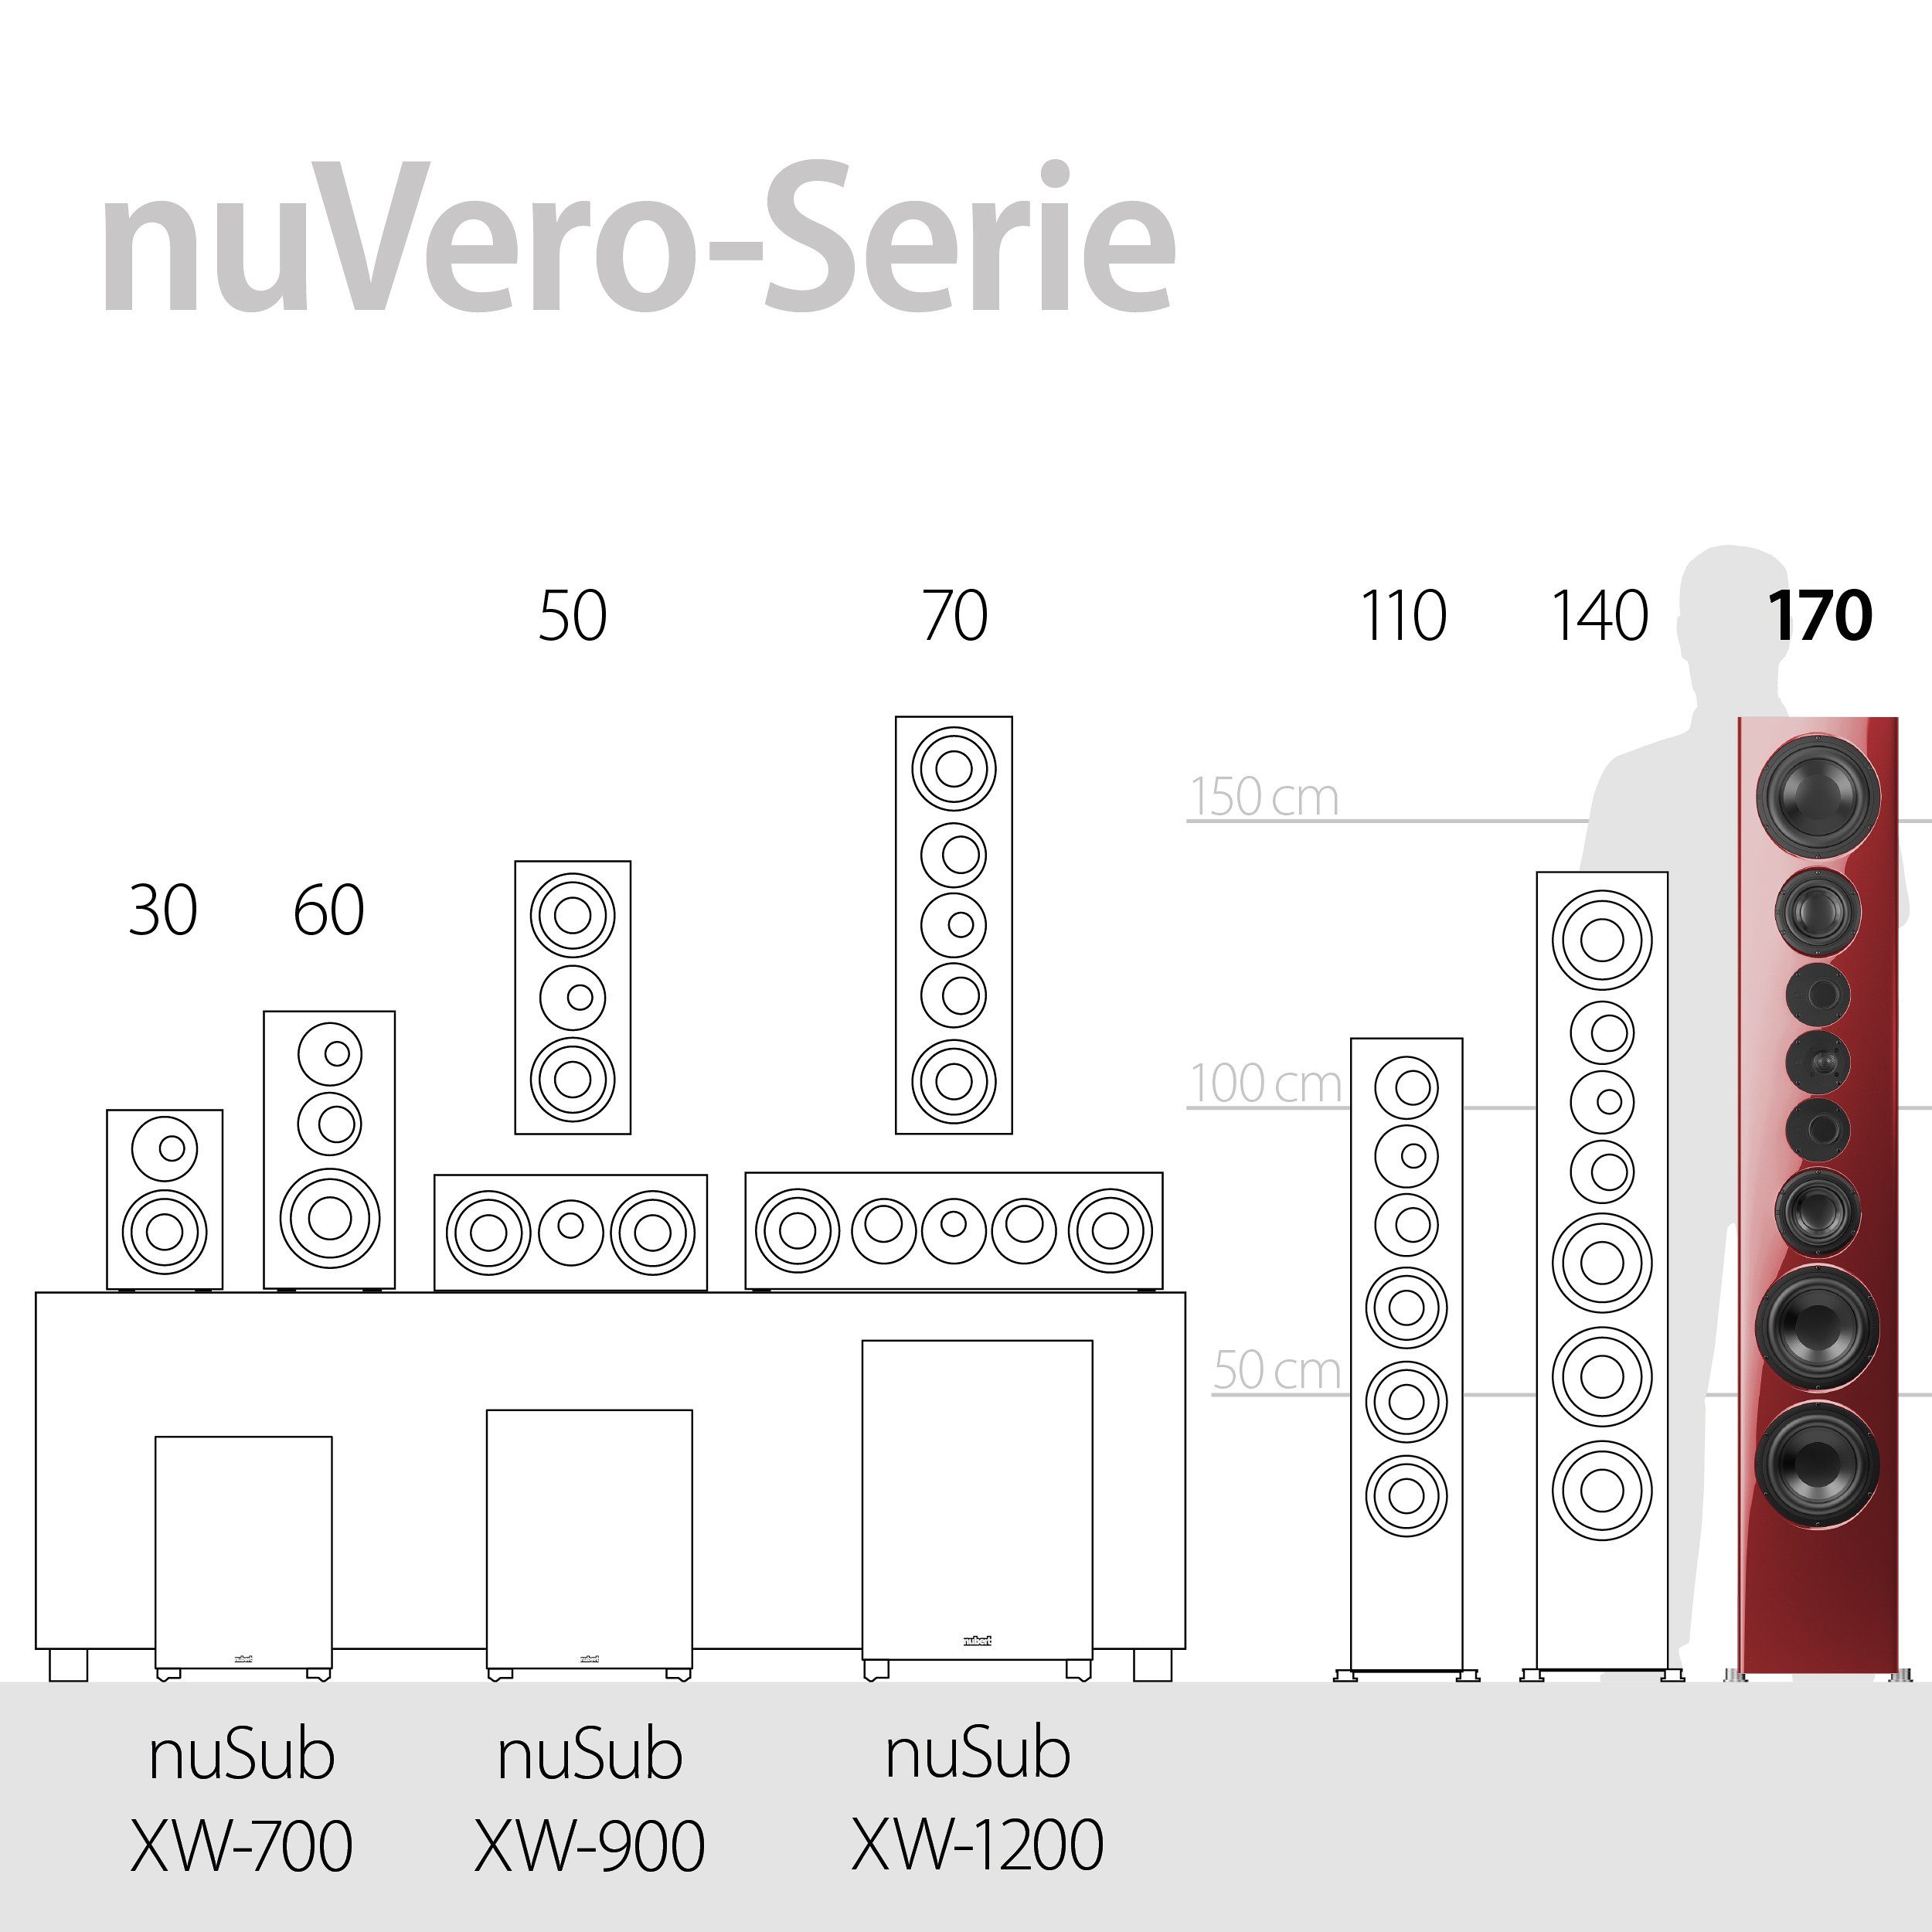 (650 W) nuVero 170 Stand-Lautsprecher Nubert Rubinrot